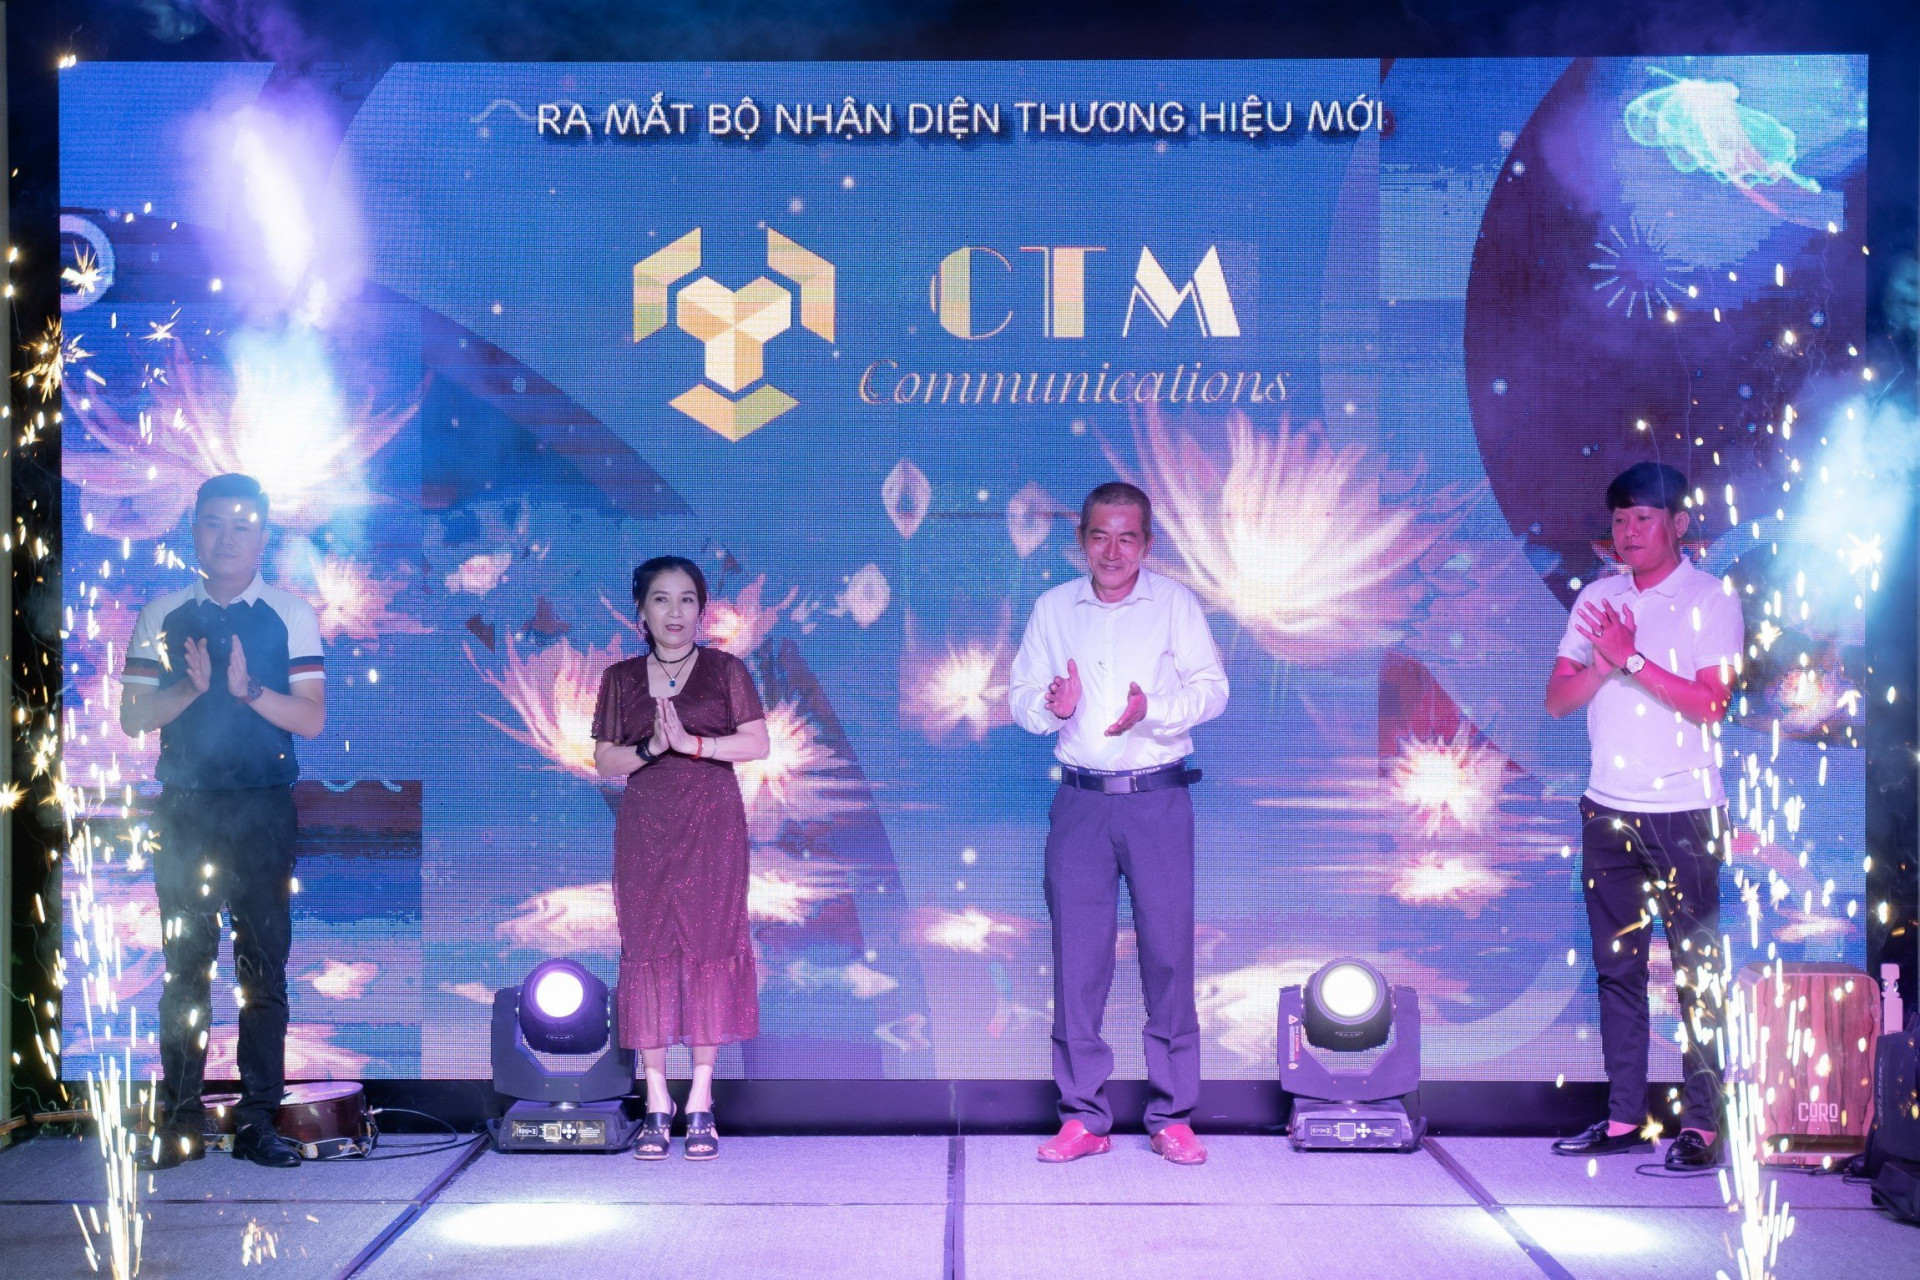 CTM Communications ra mắt bộ nhận diện thương hiệu mới